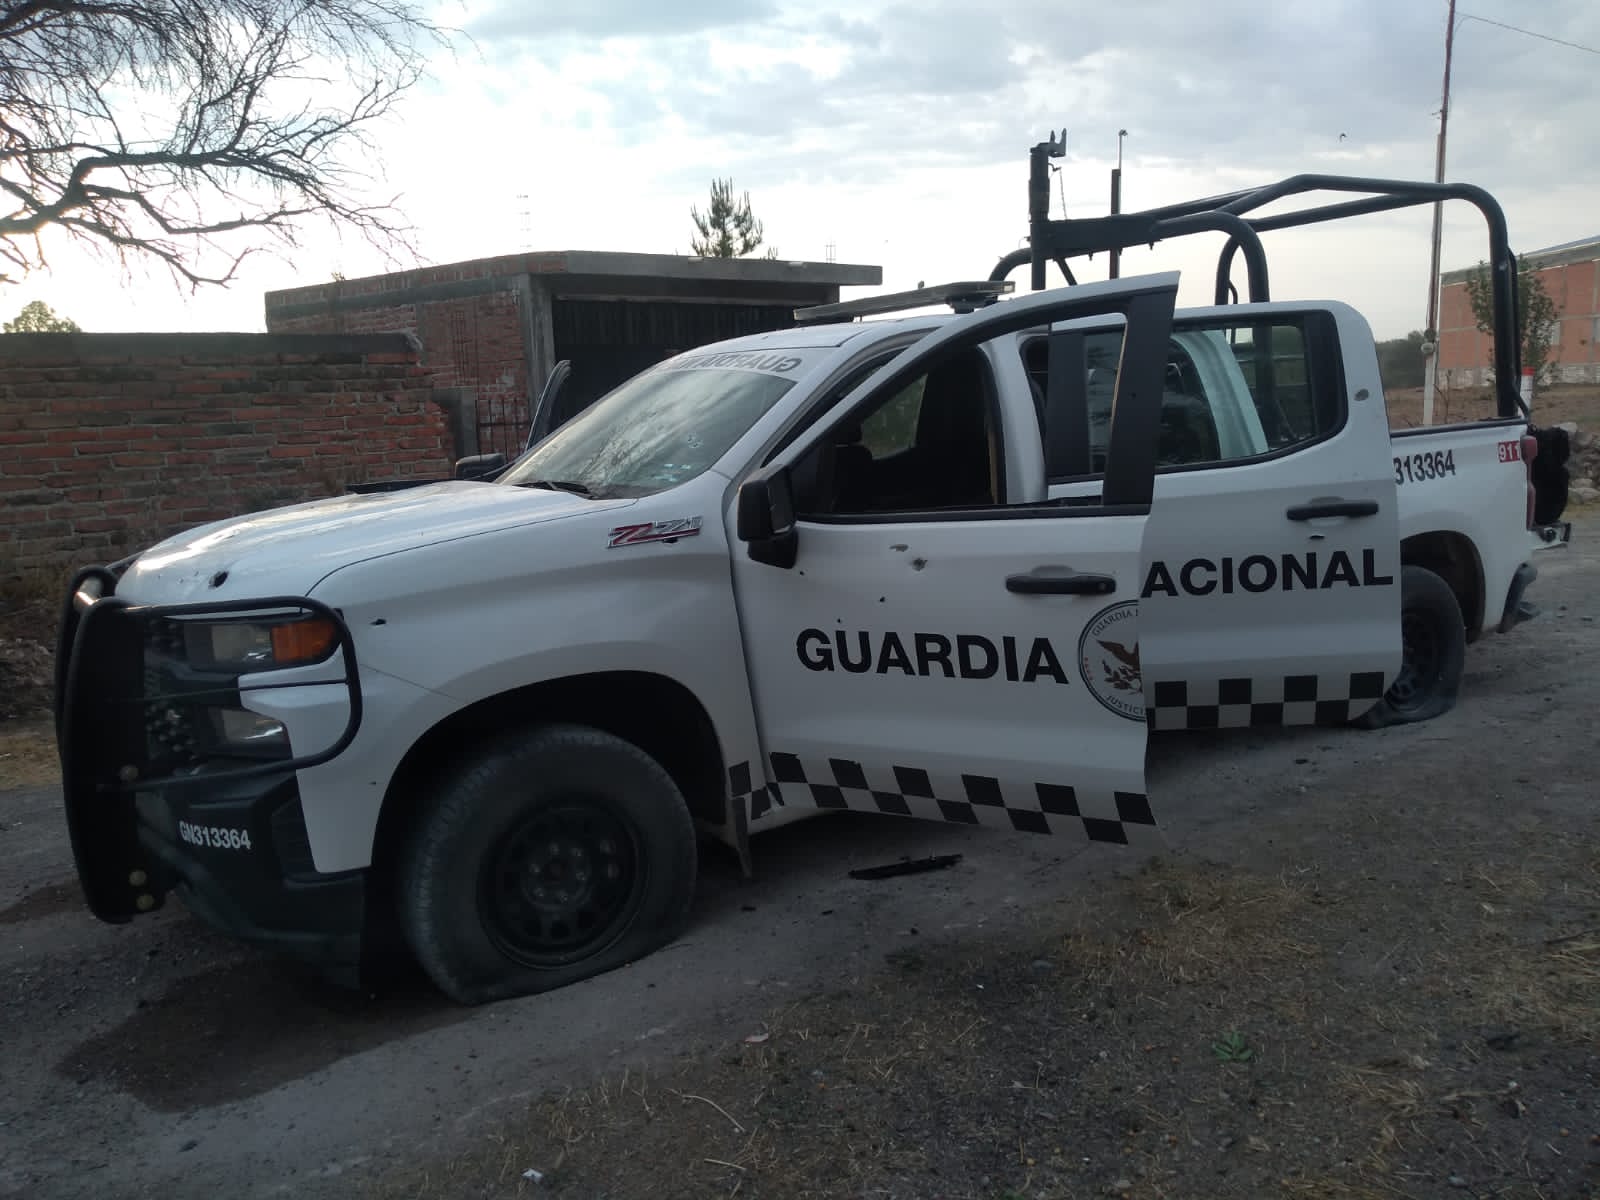 Incautan FX-05 y cargadores a grupo criminal en Teocaltiche Jalisco RTIOO4IHPRF6DHYGOMA3MTWYBM